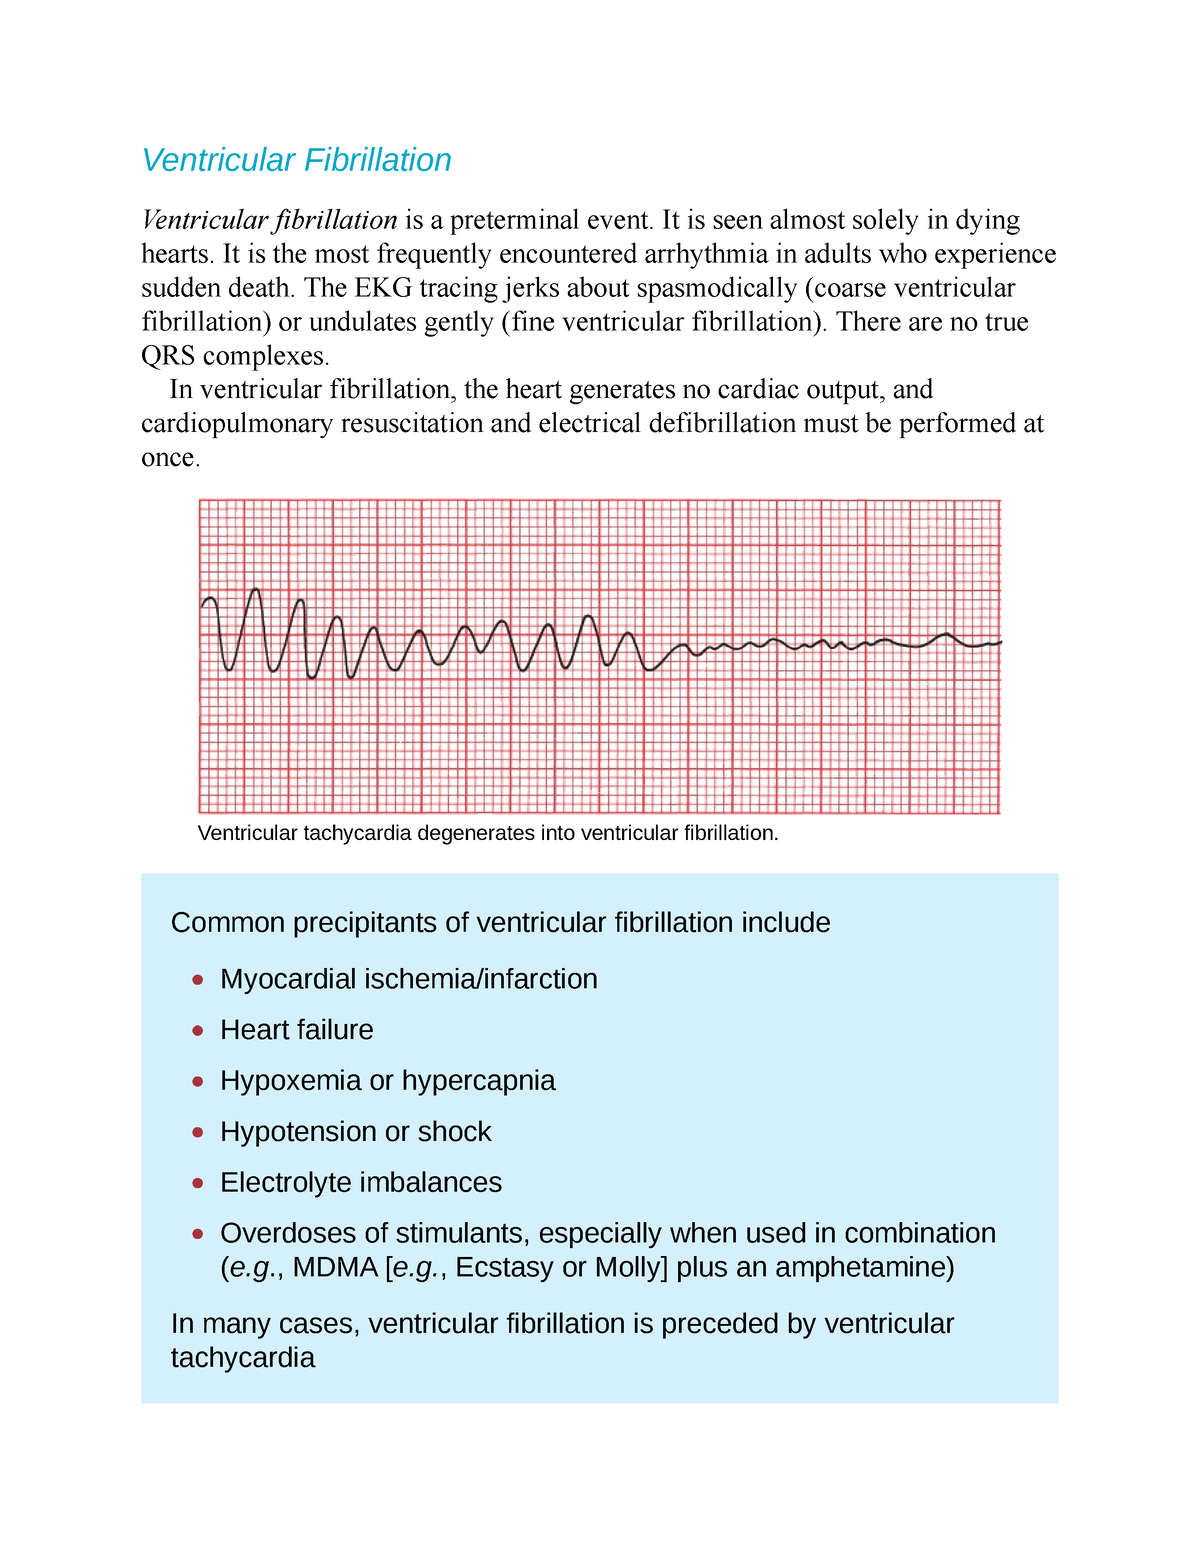 fine ventricular fibrillation vs coarse ventricular fibrillation